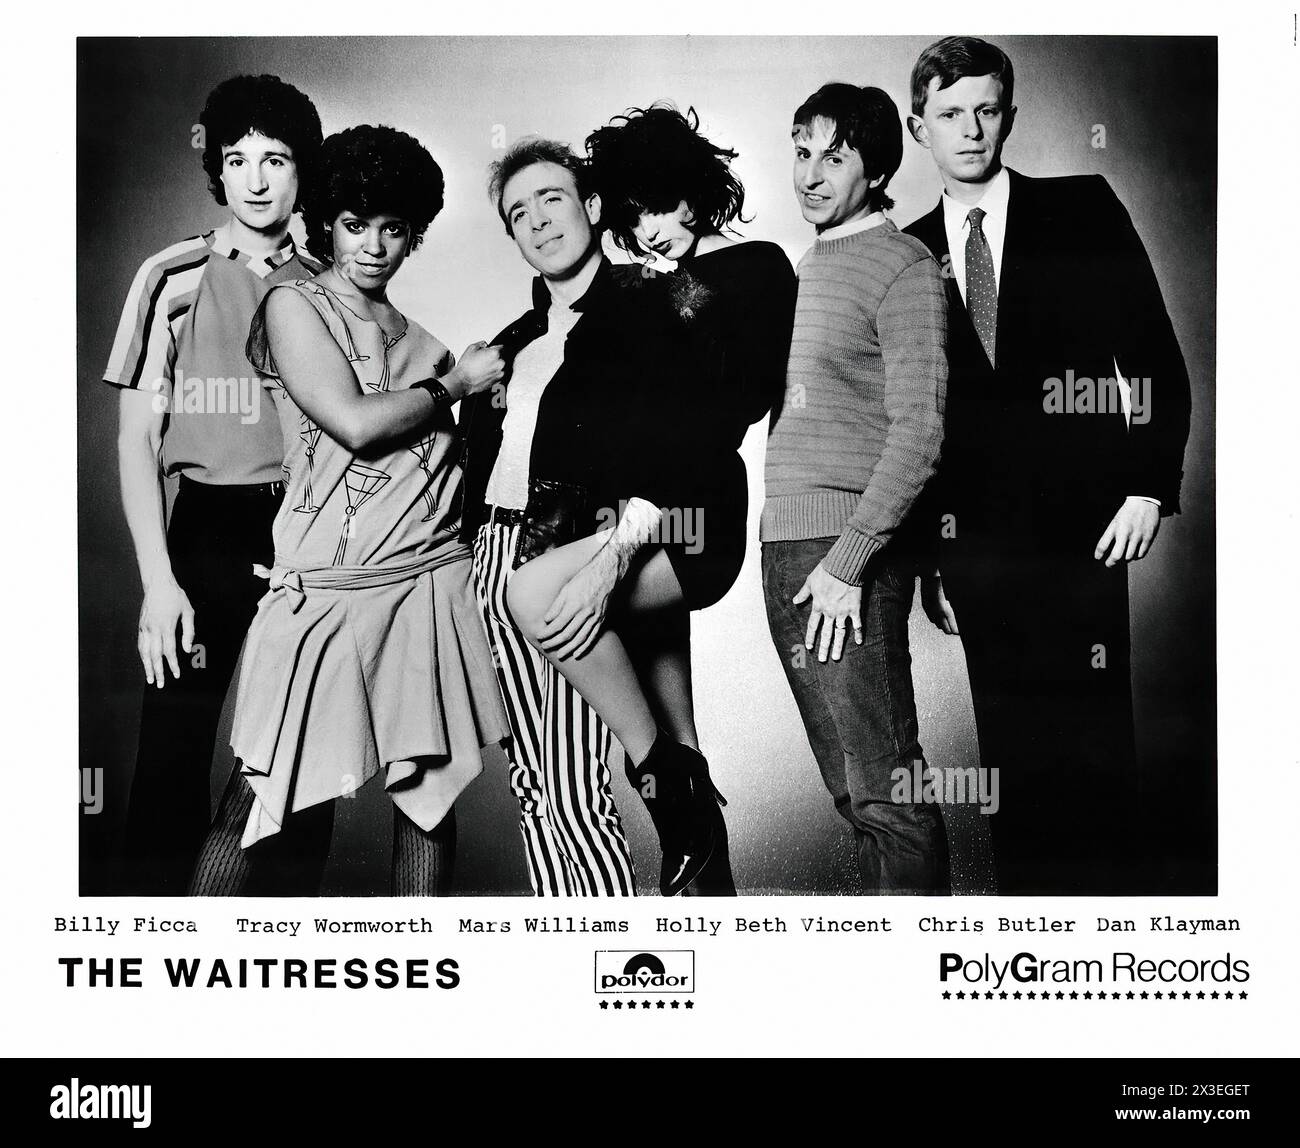 Les serveuses - - photo promotionnelle du label de musique vintage - photographe inconnu, pour usage éditorial uniquement Banque D'Images